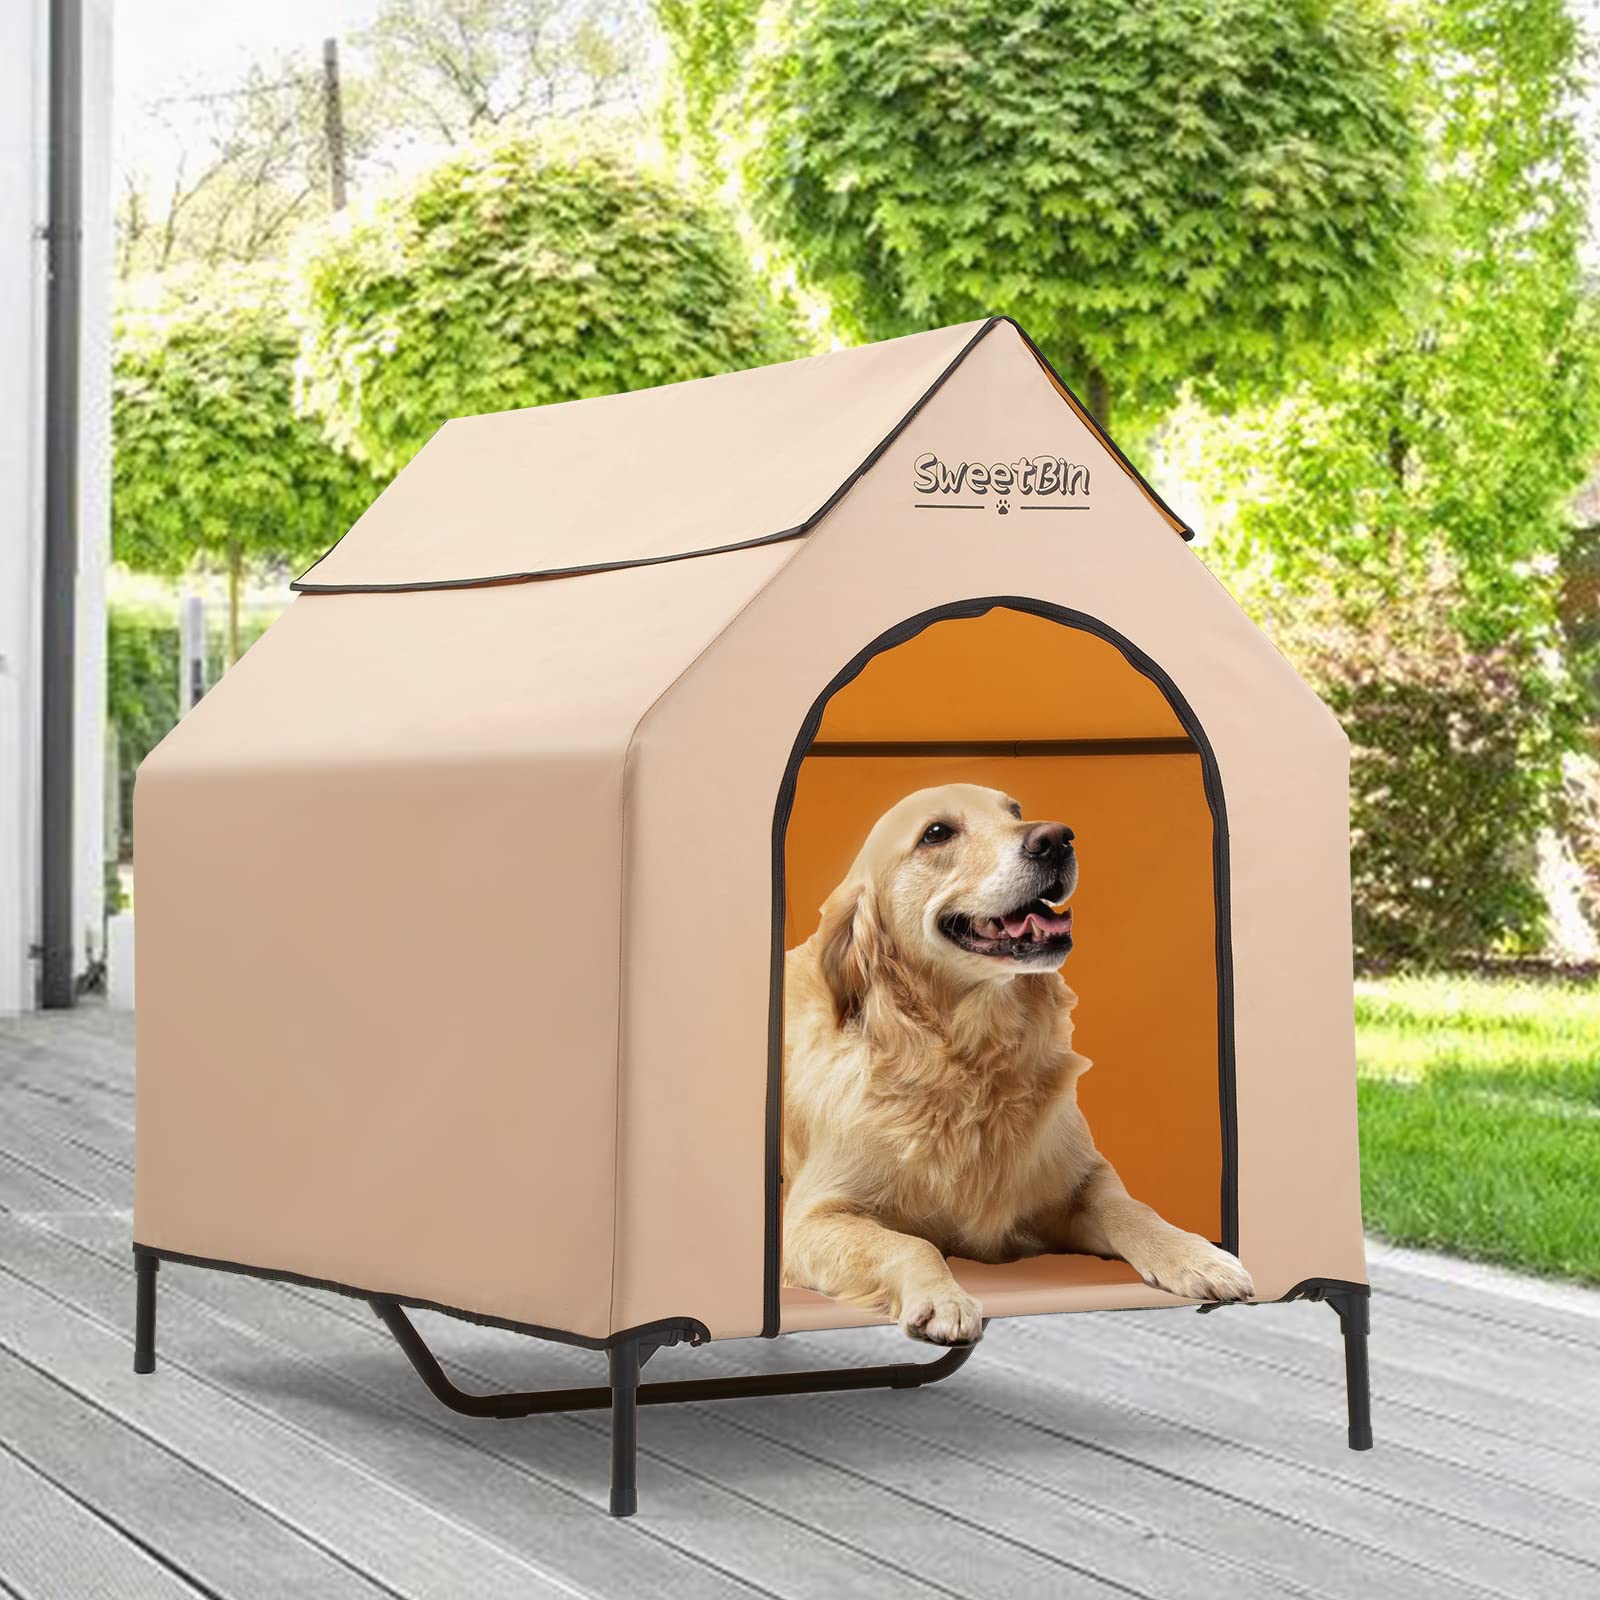 送料無料SweetBin 3 Size Steel Frame Elevated Dog House Pet Shelter with Waterproof Cover Door for Small Medium Dogs Do